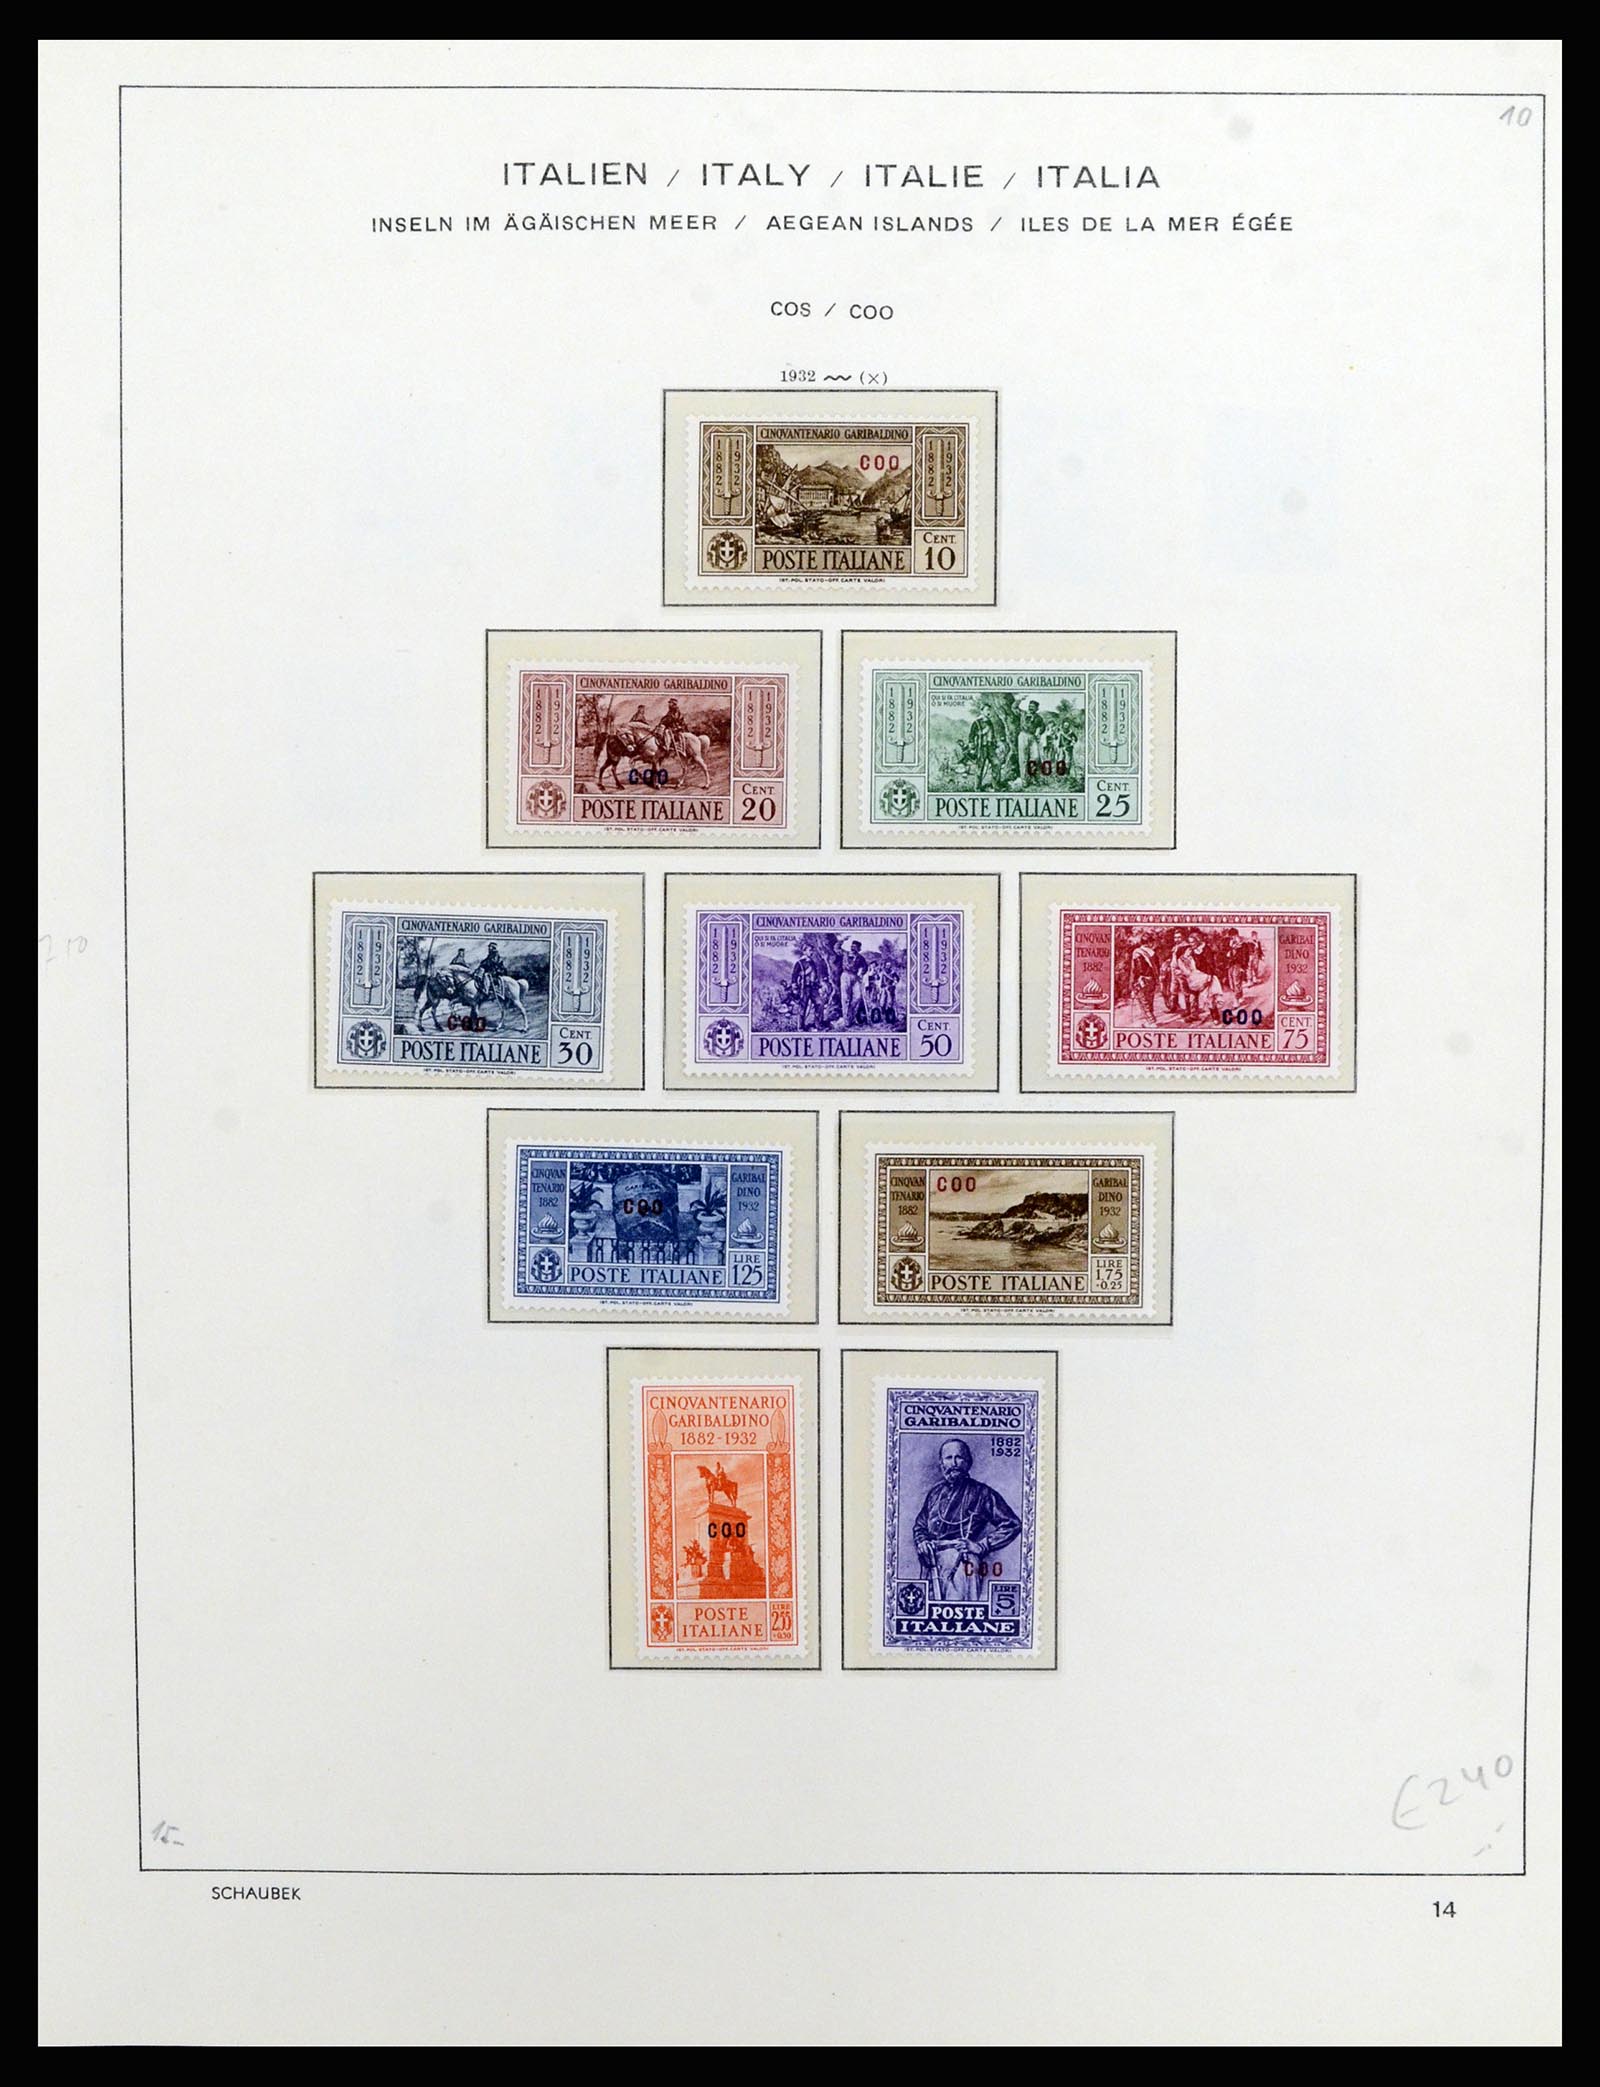 36577 040 - Stamp collection 36577 Italiaanse gebieden 1870-1940.